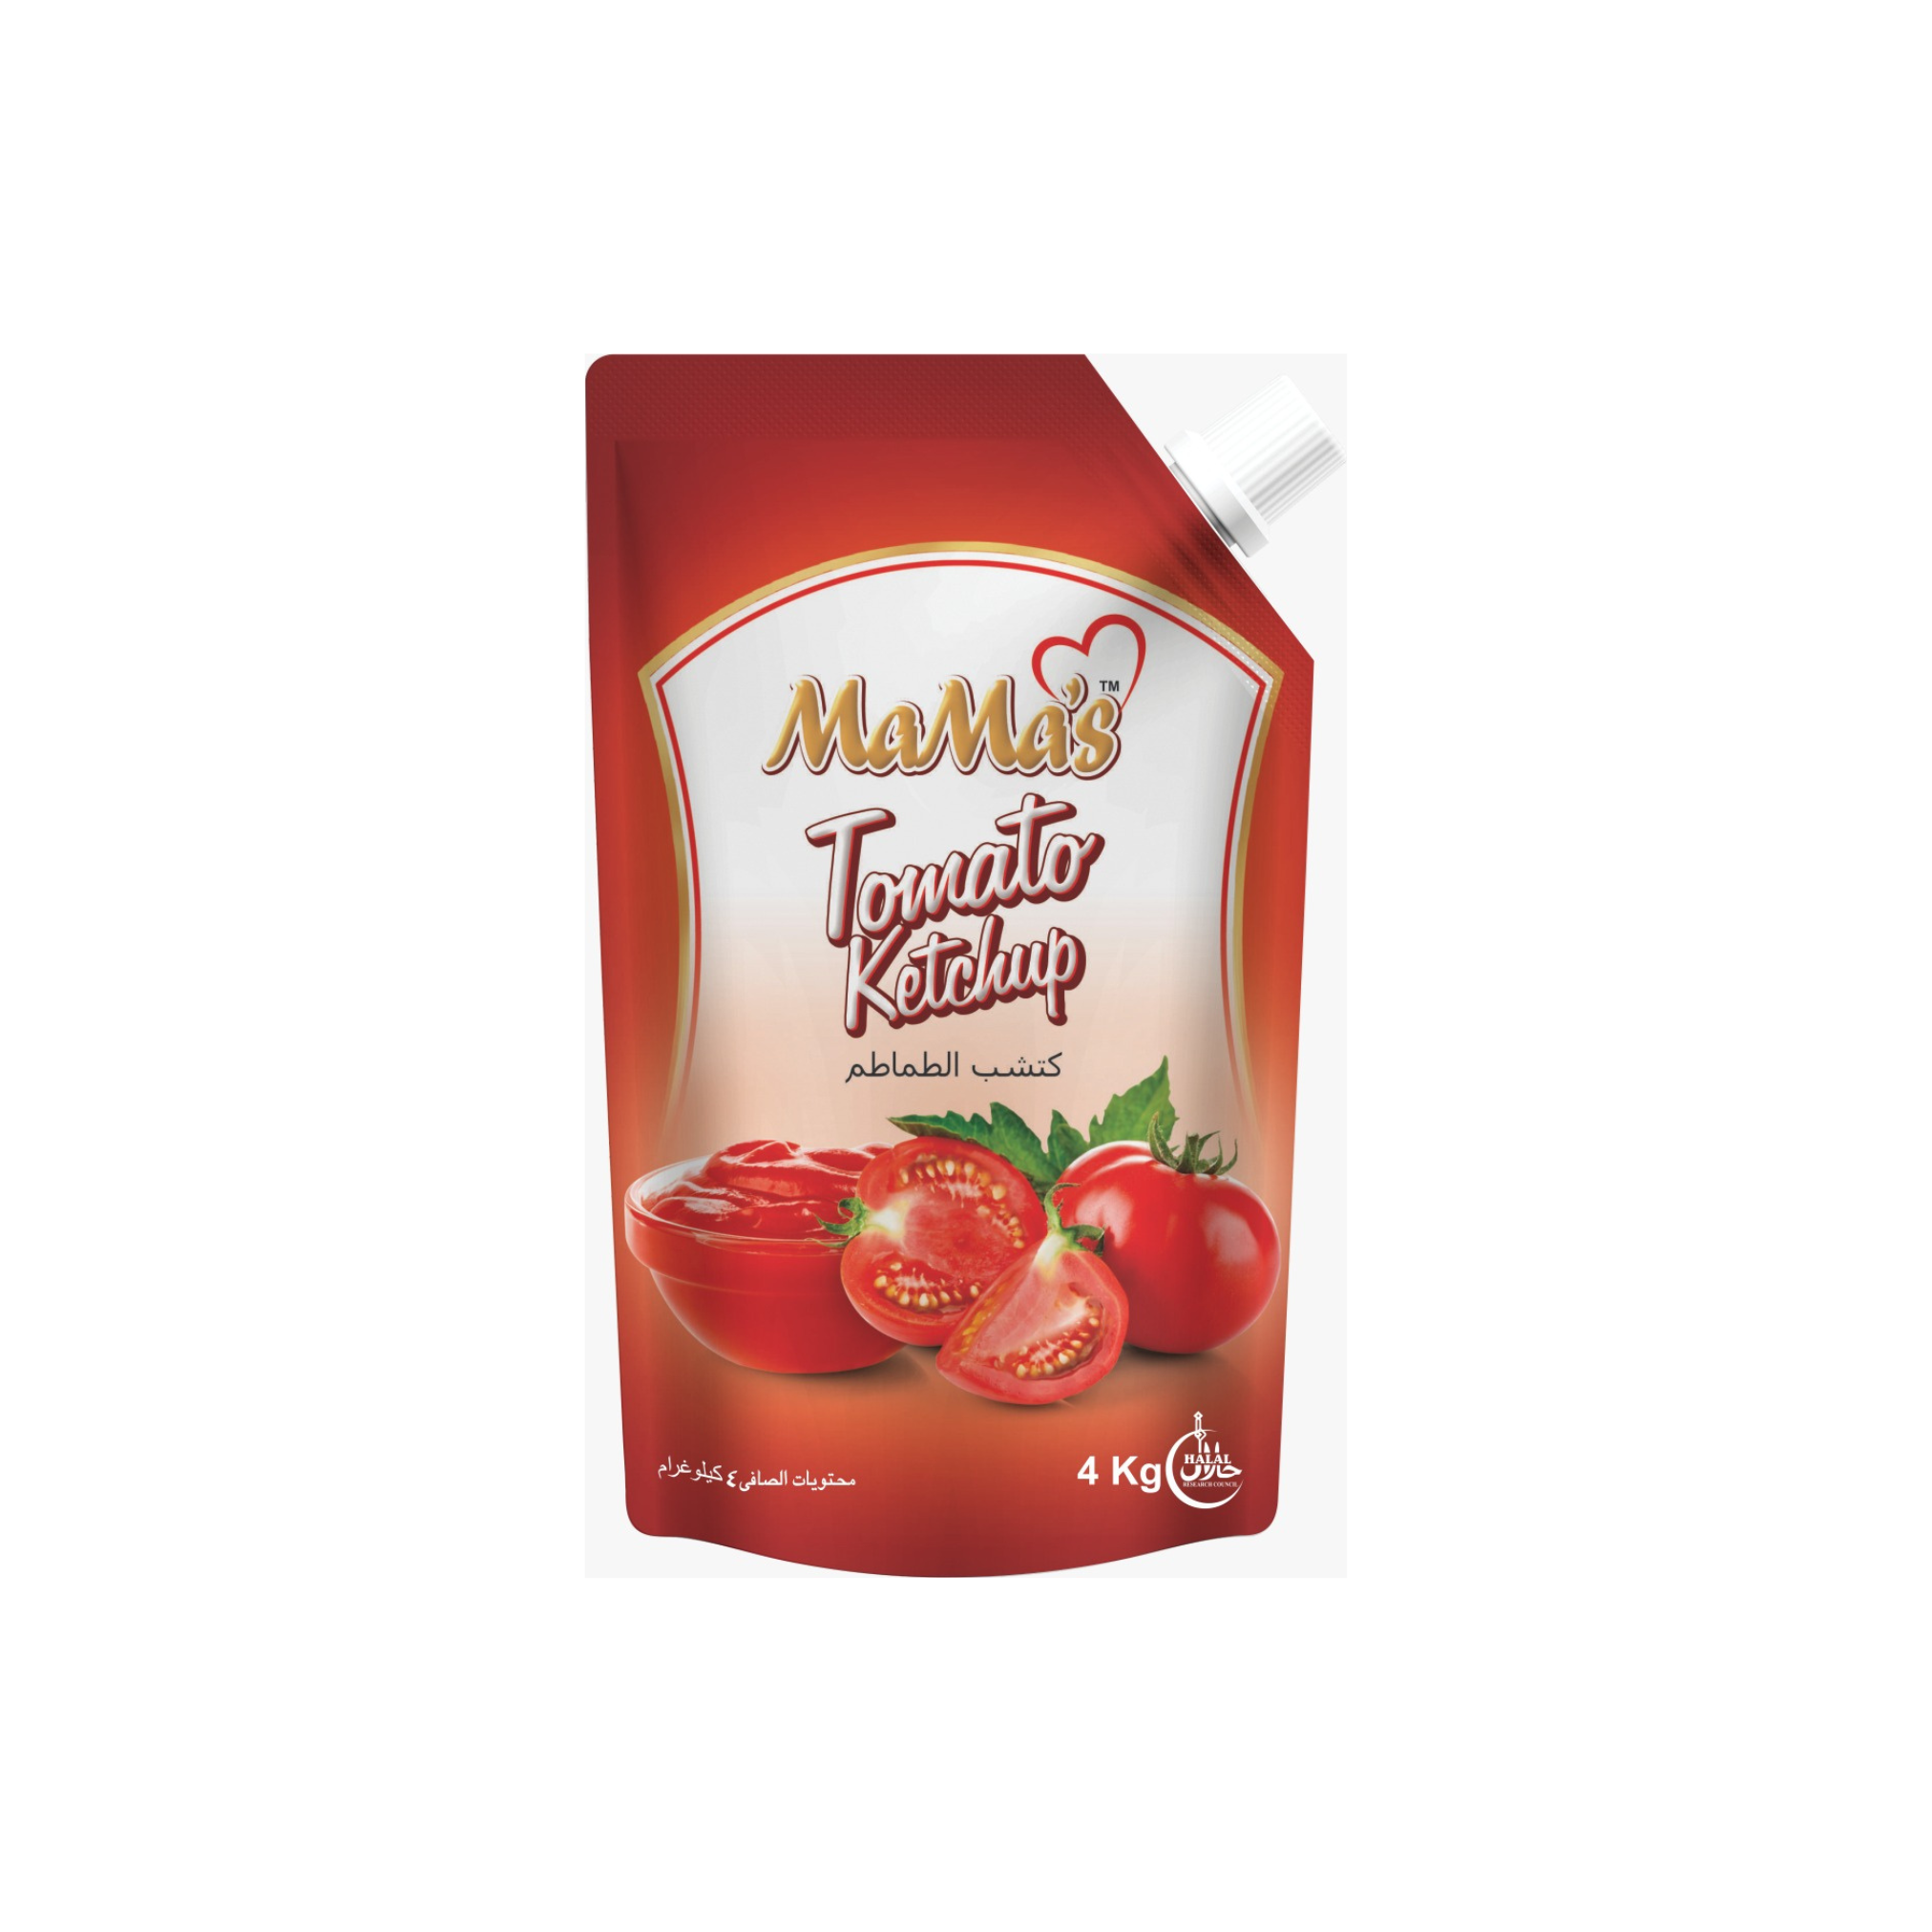 Mama's Tomato Ketchup 4 KG